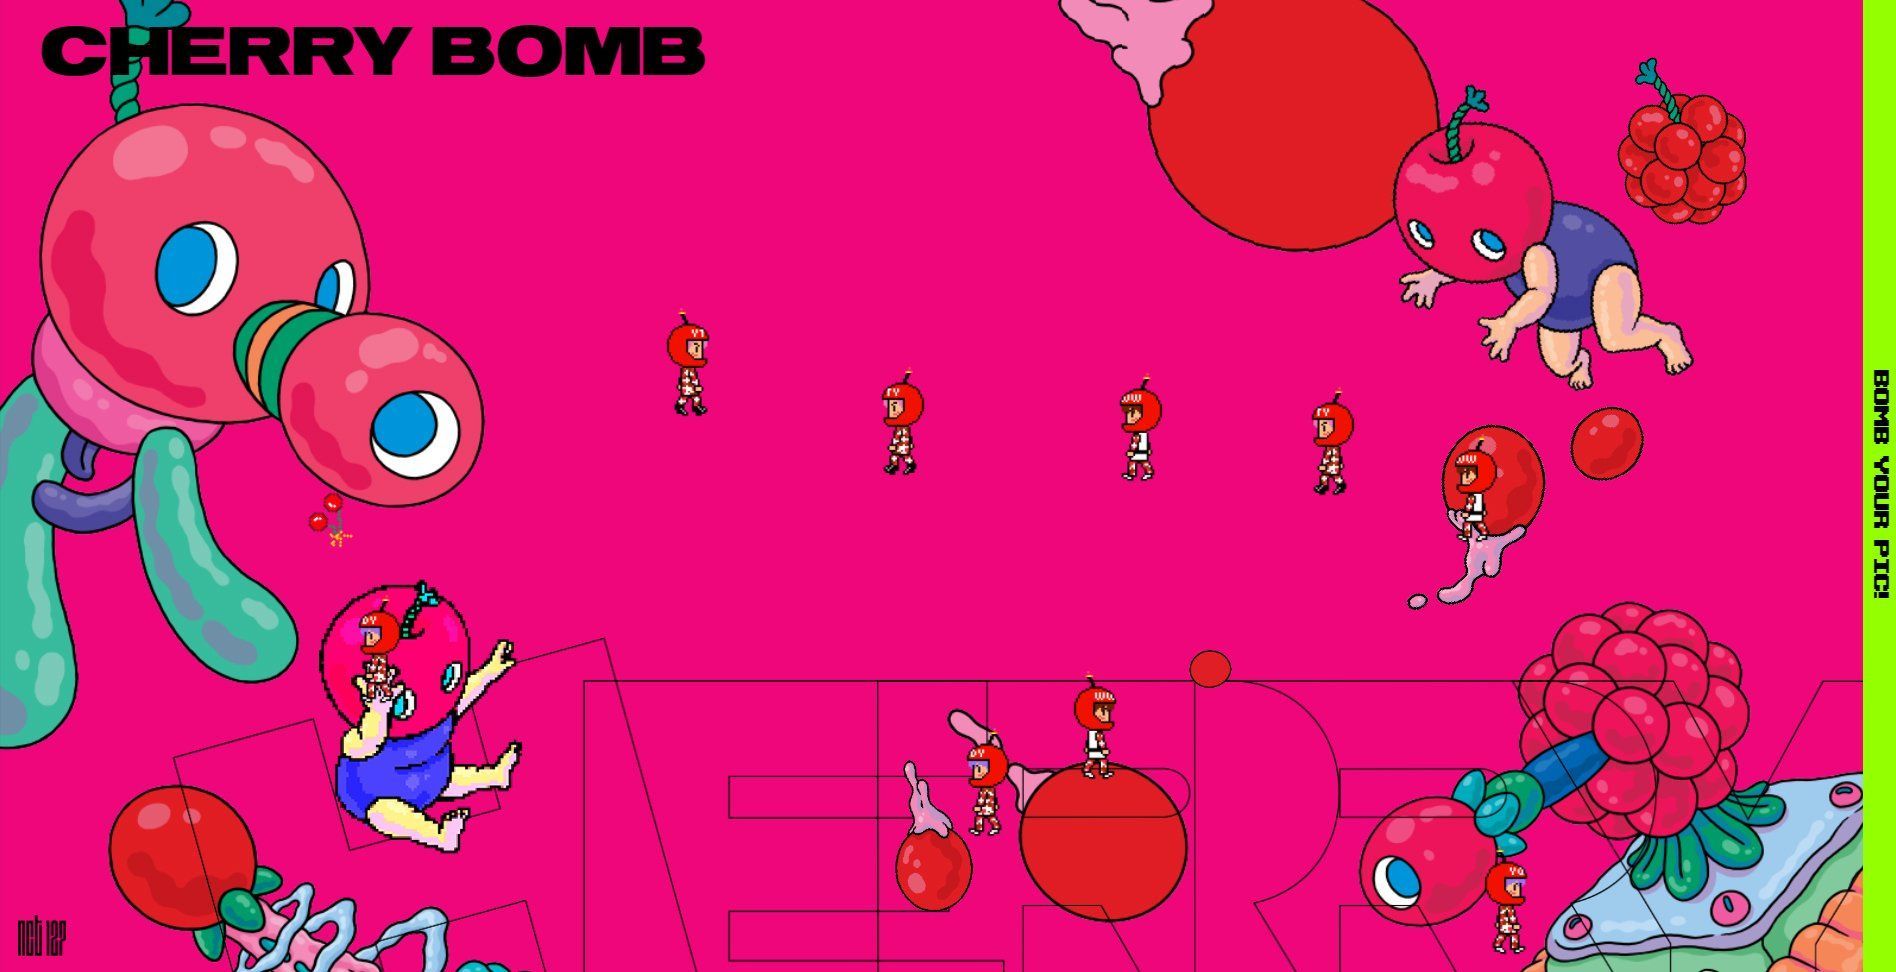 Cherry bomb hello daddy. NCT 127 Cherry Bomb. Бомба Cherry Bomb. Cherry Bomb обои. NCT Cherry Bomb.